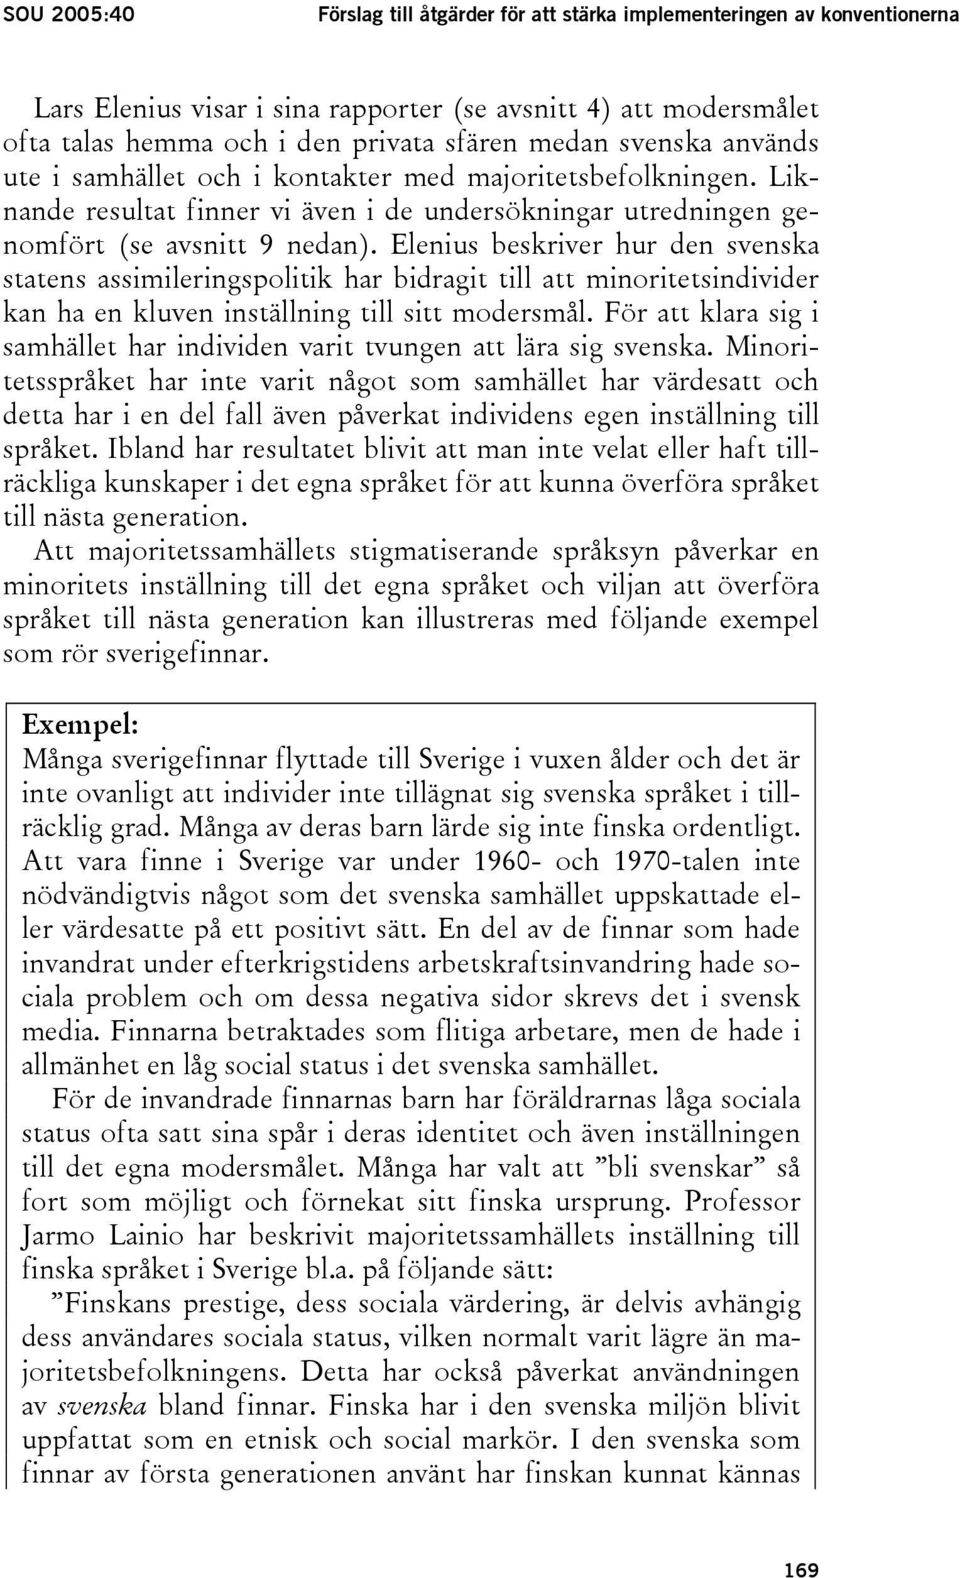 Elenius beskriver hur den svenska statens assimileringspolitik har bidragit till att minoritetsindivider kan ha en kluven inställning till sitt modersmål.